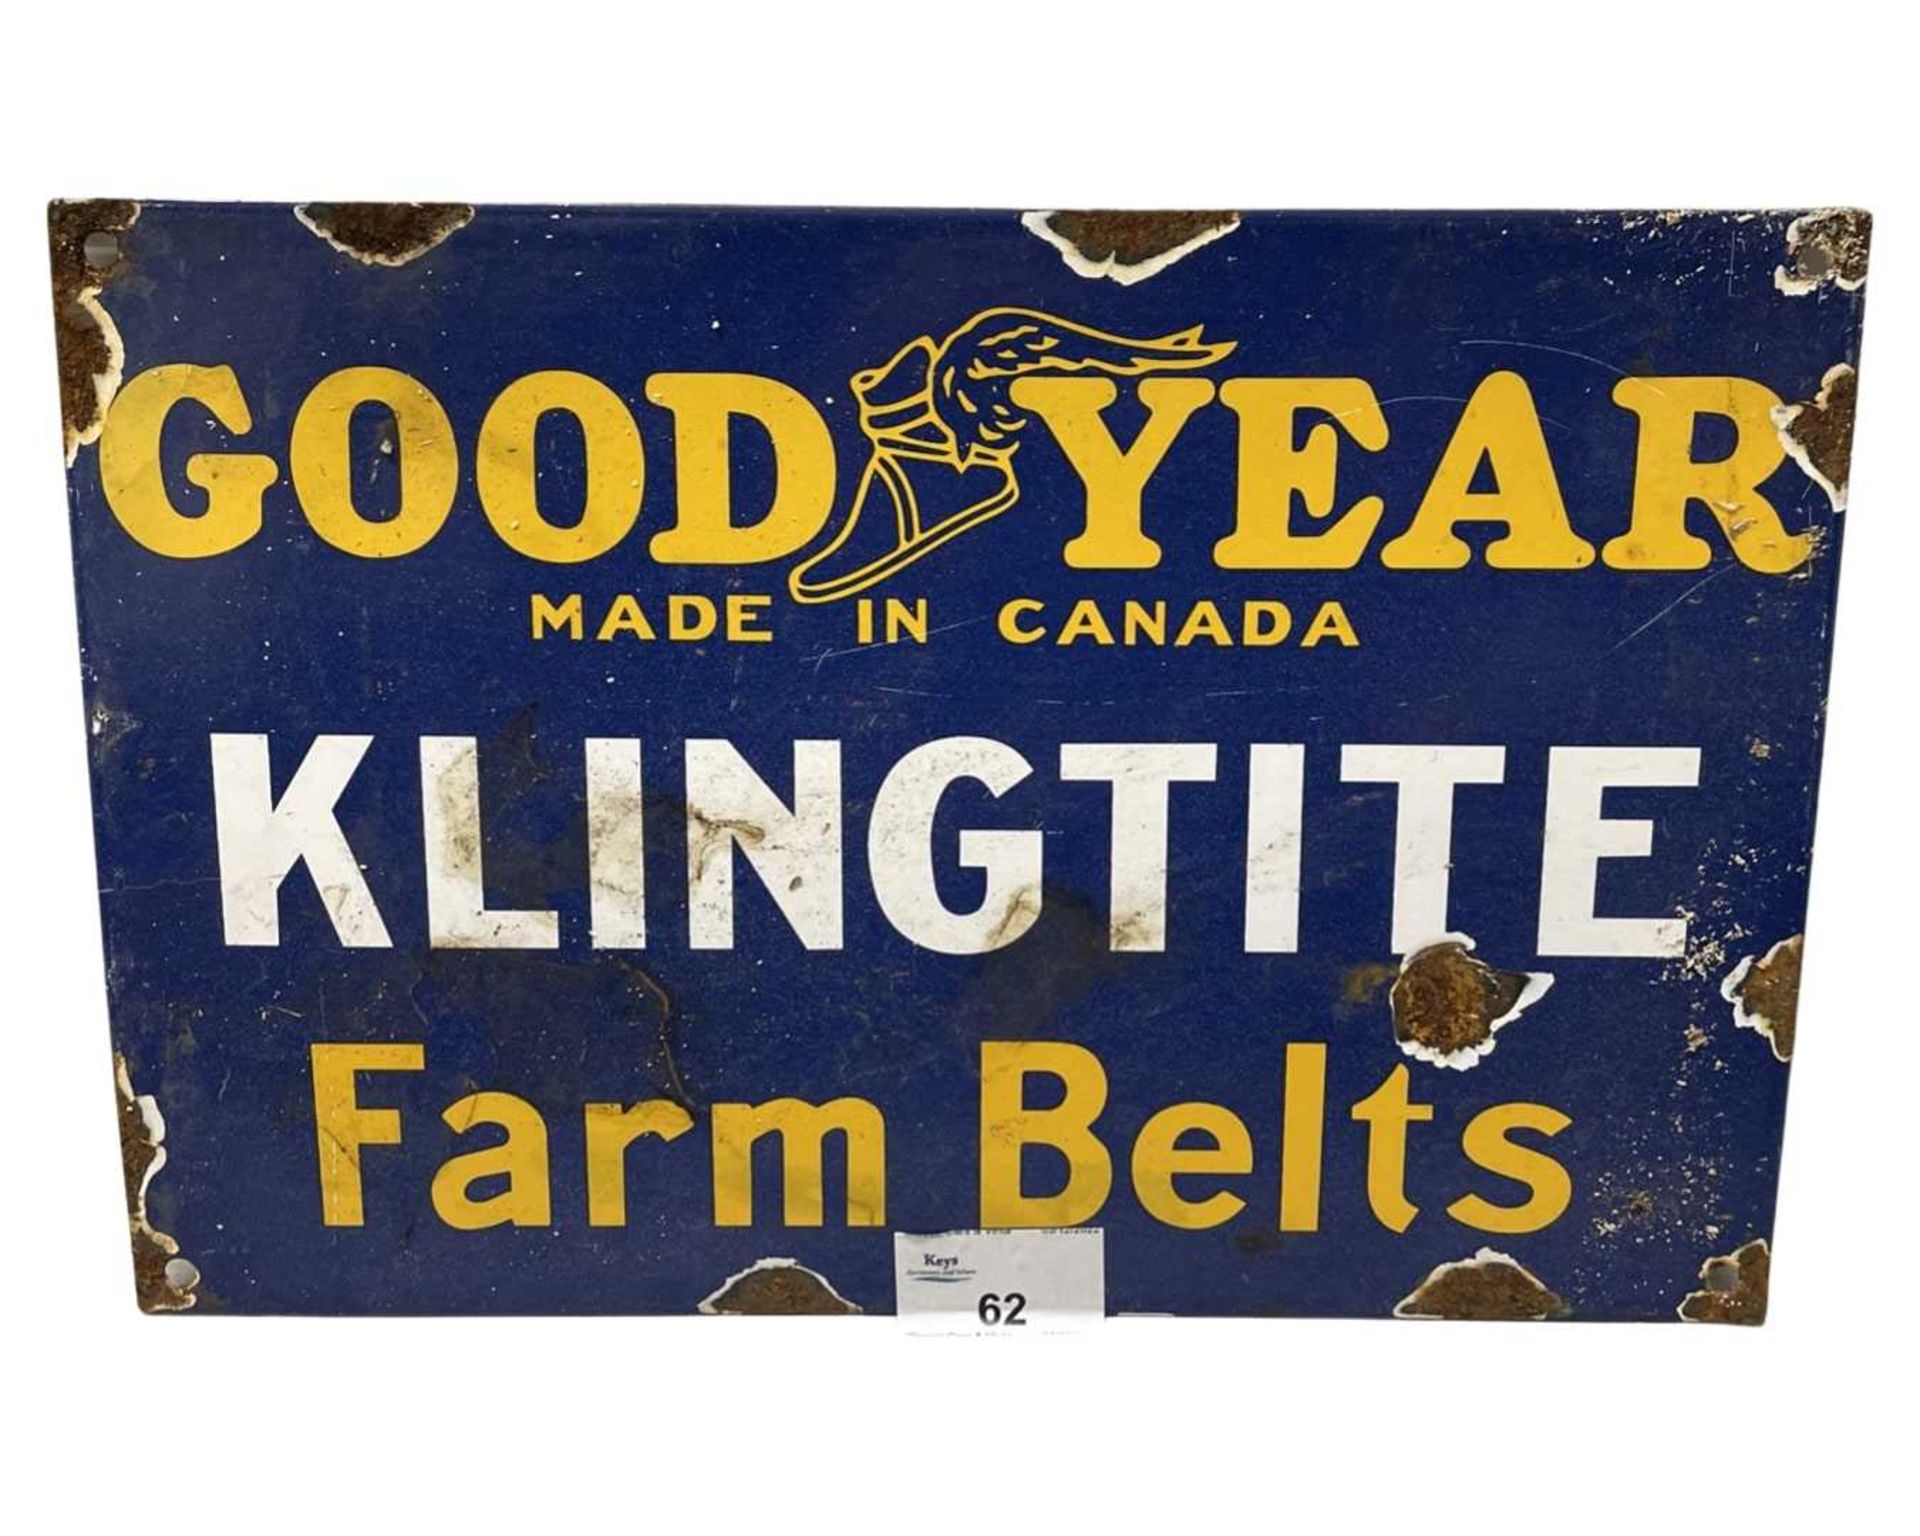 Goodyear Farm Belts enamel sign